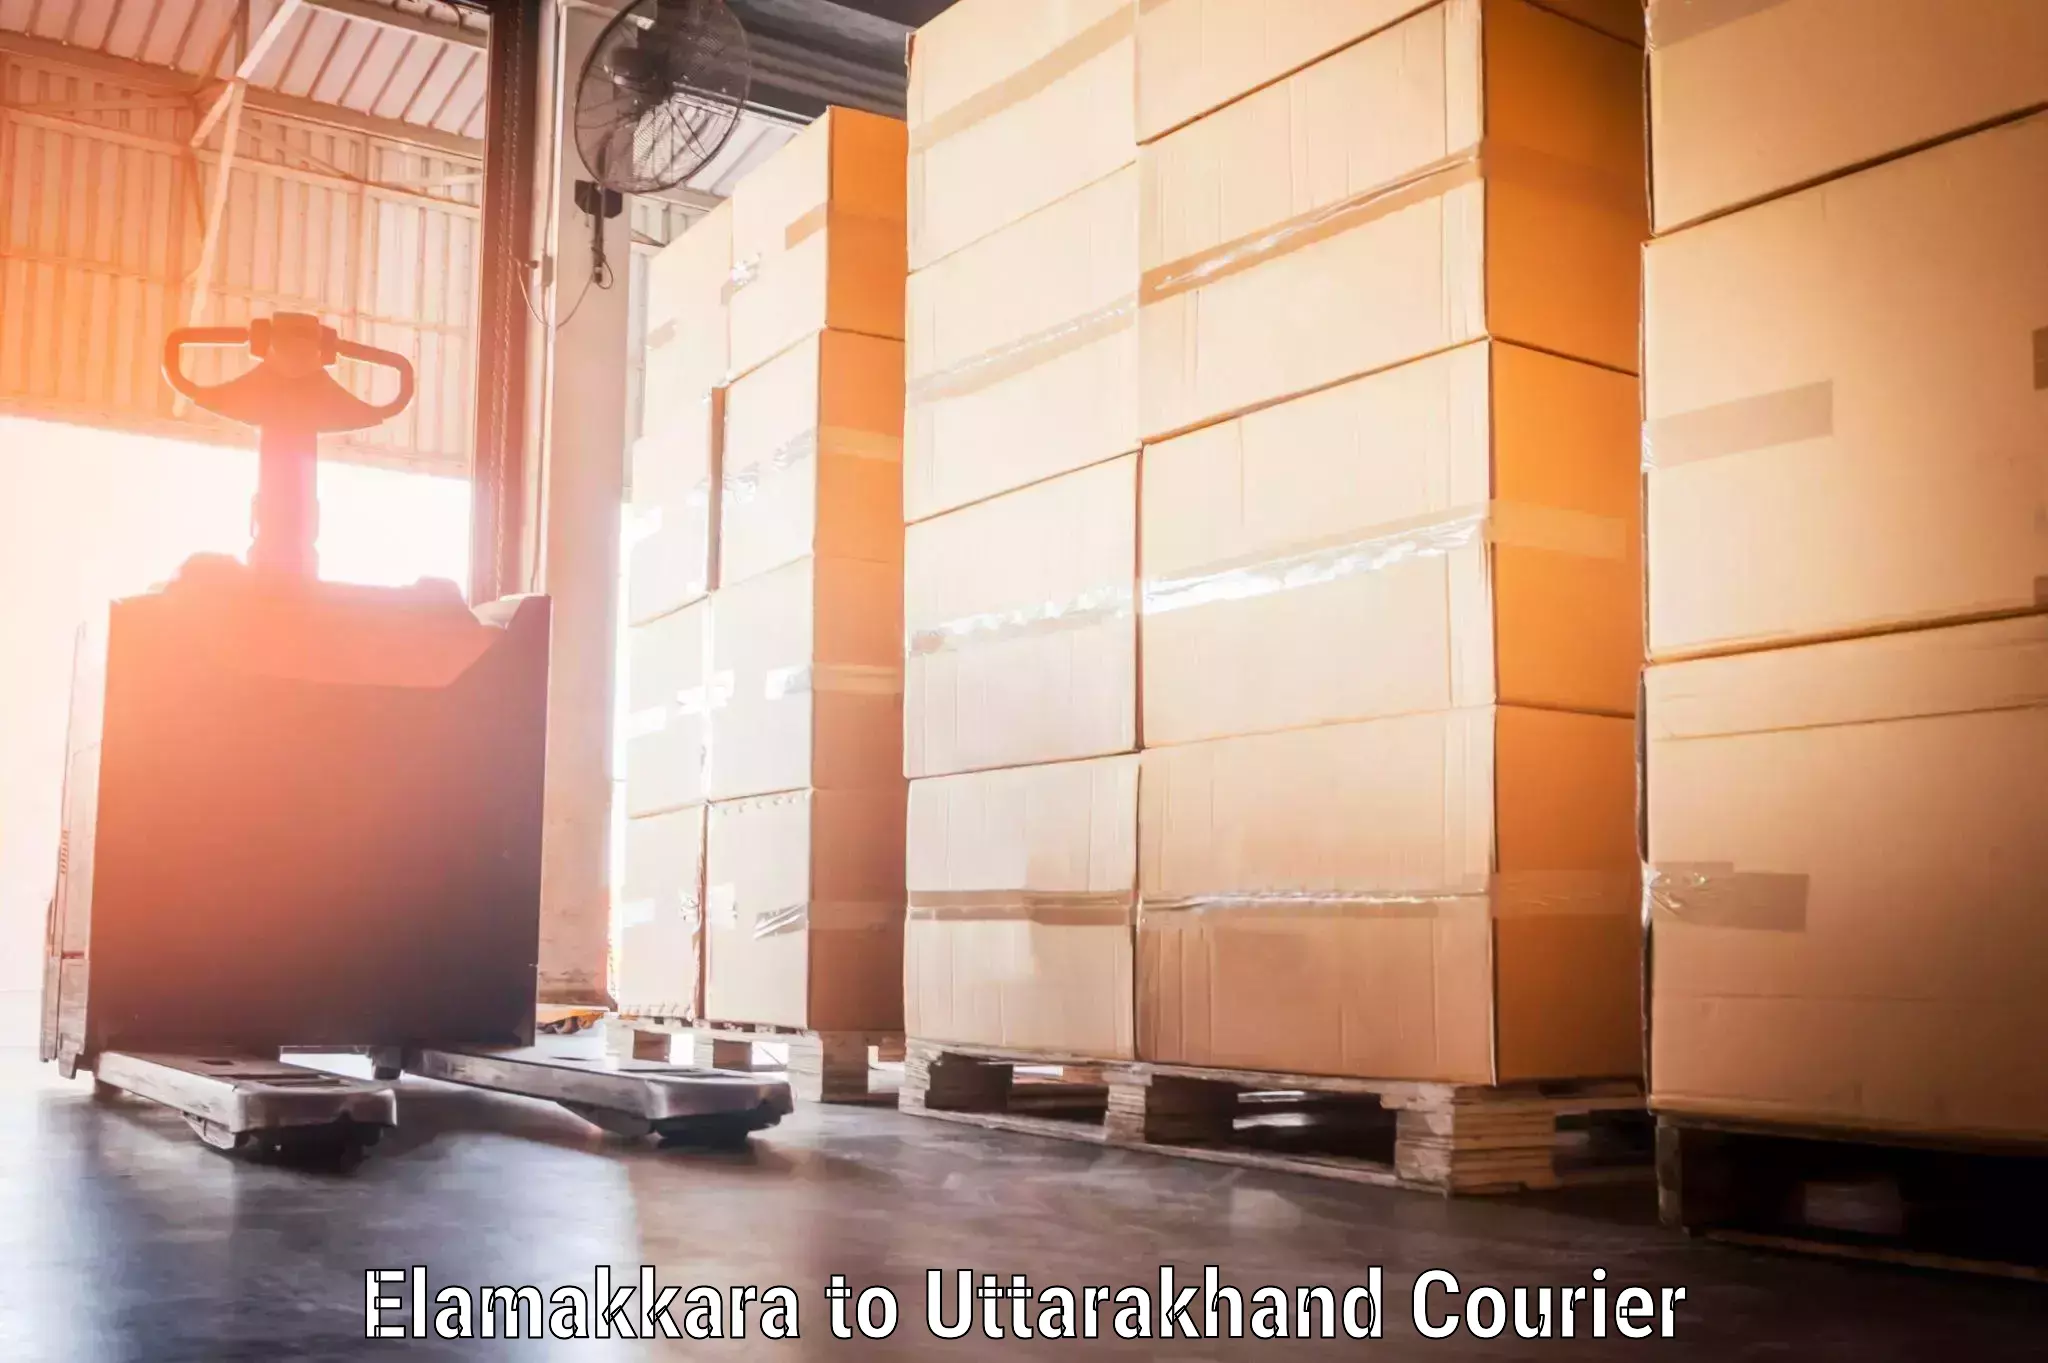 Efficient luggage delivery Elamakkara to Uttarakhand